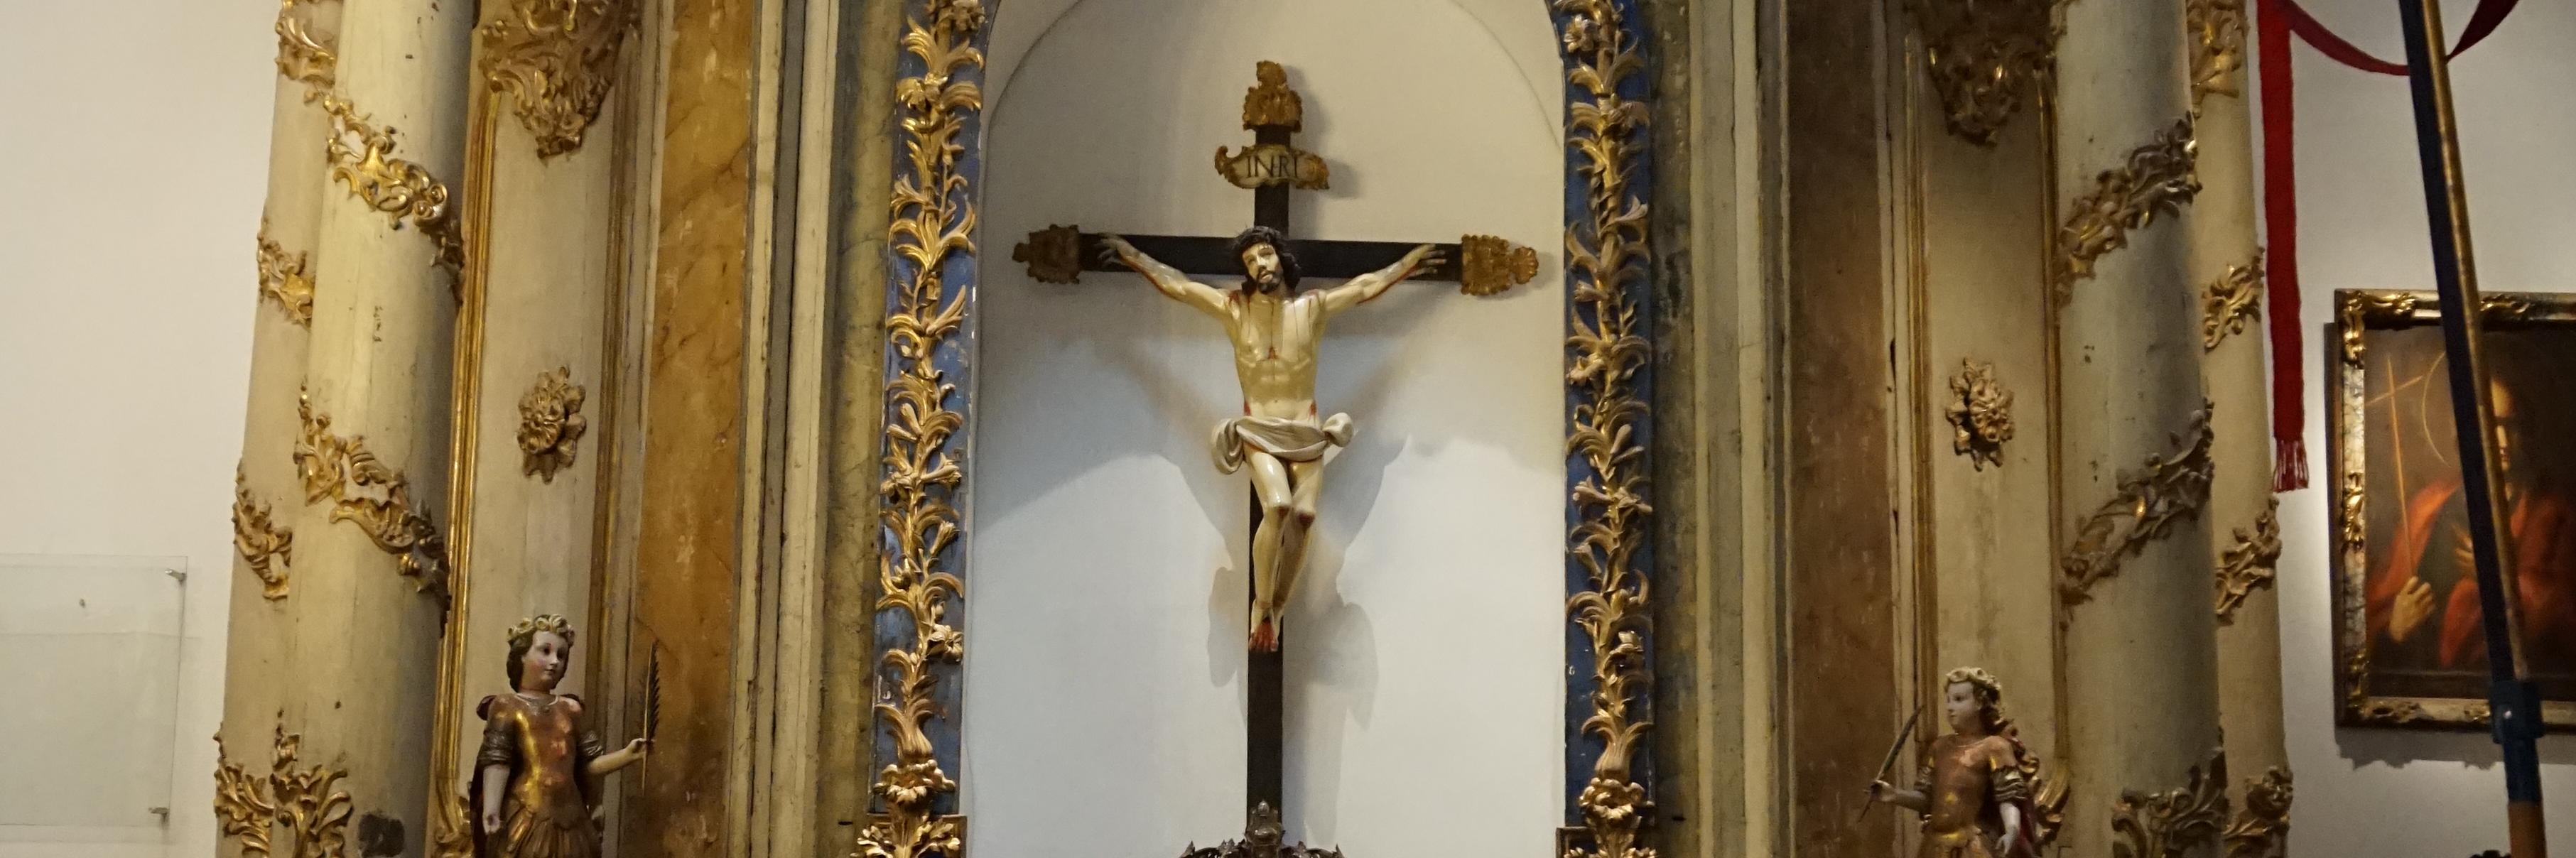 Vista general retablo de la sacristía de la Catedral de Santiago.